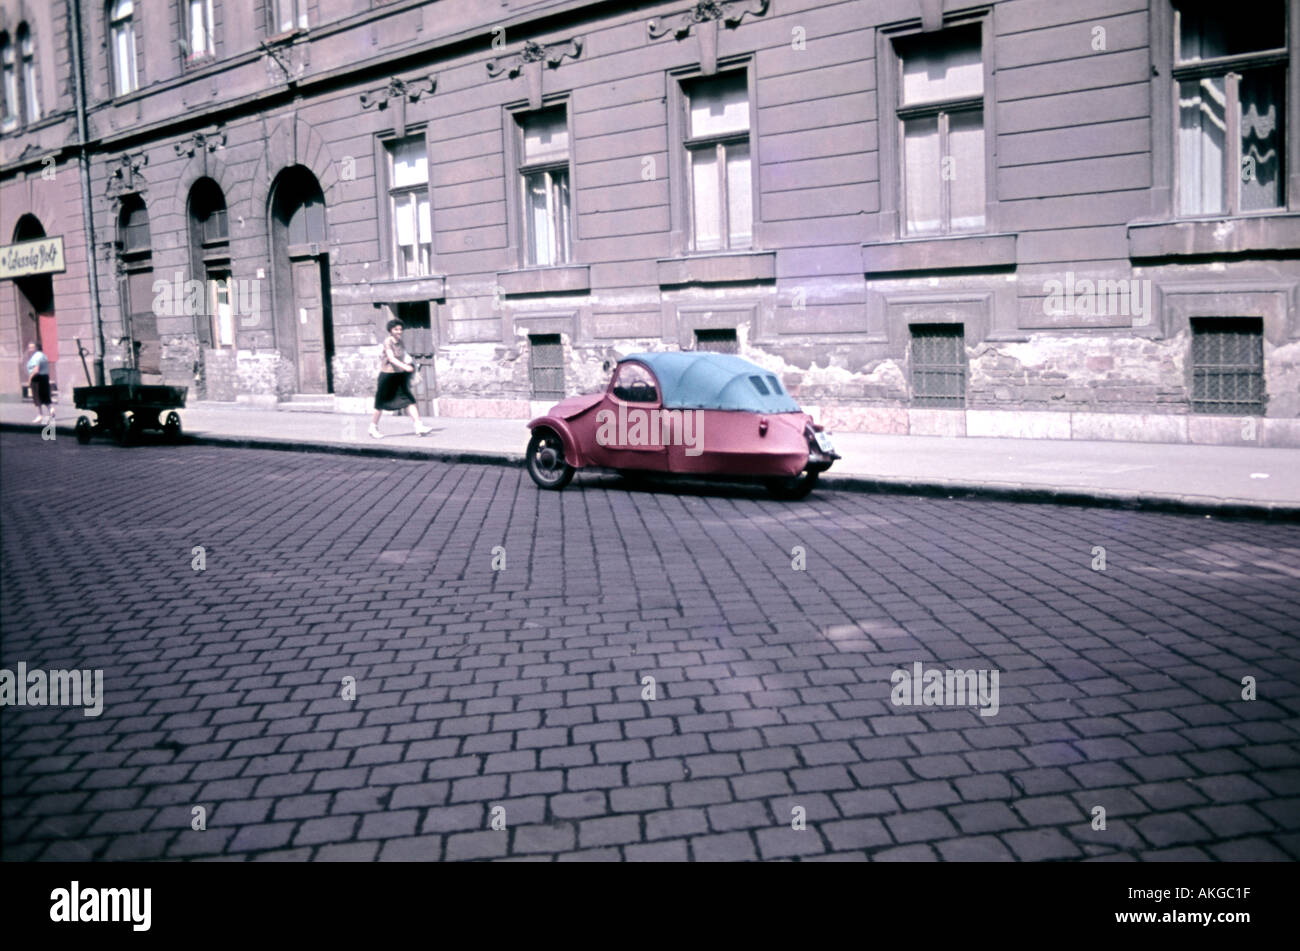 Vieille voiture à trois roues quelque part en Europe de l'est peut-être 1960 Hongrie Budapest Banque D'Images